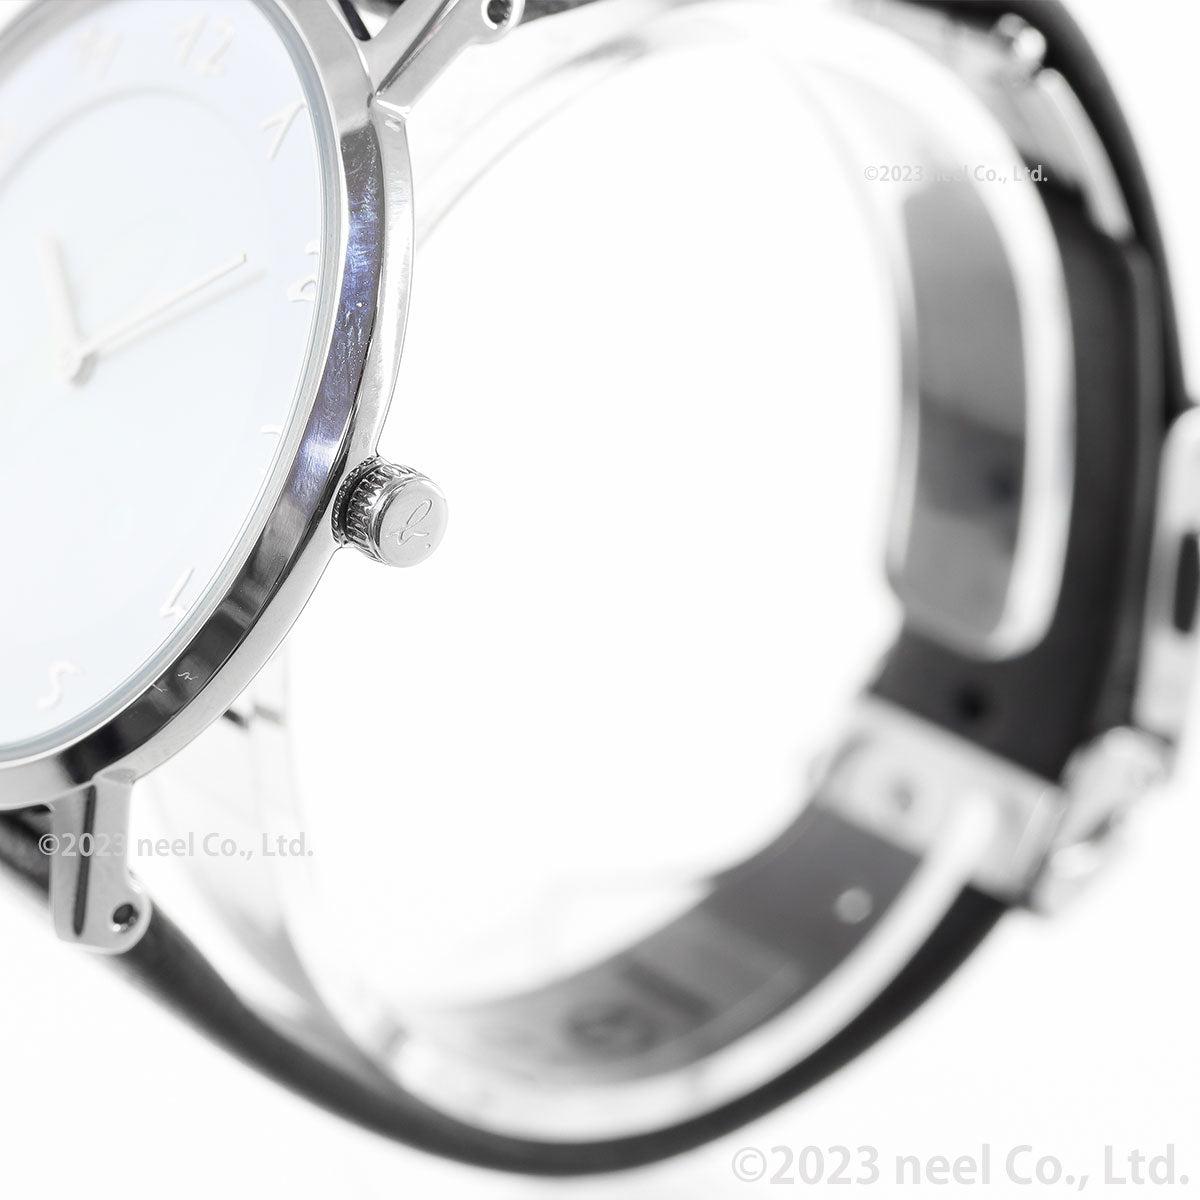 アニエスベー 時計 レディース 限定モデル 腕時計 agnes b. マルチェロ FCSK746